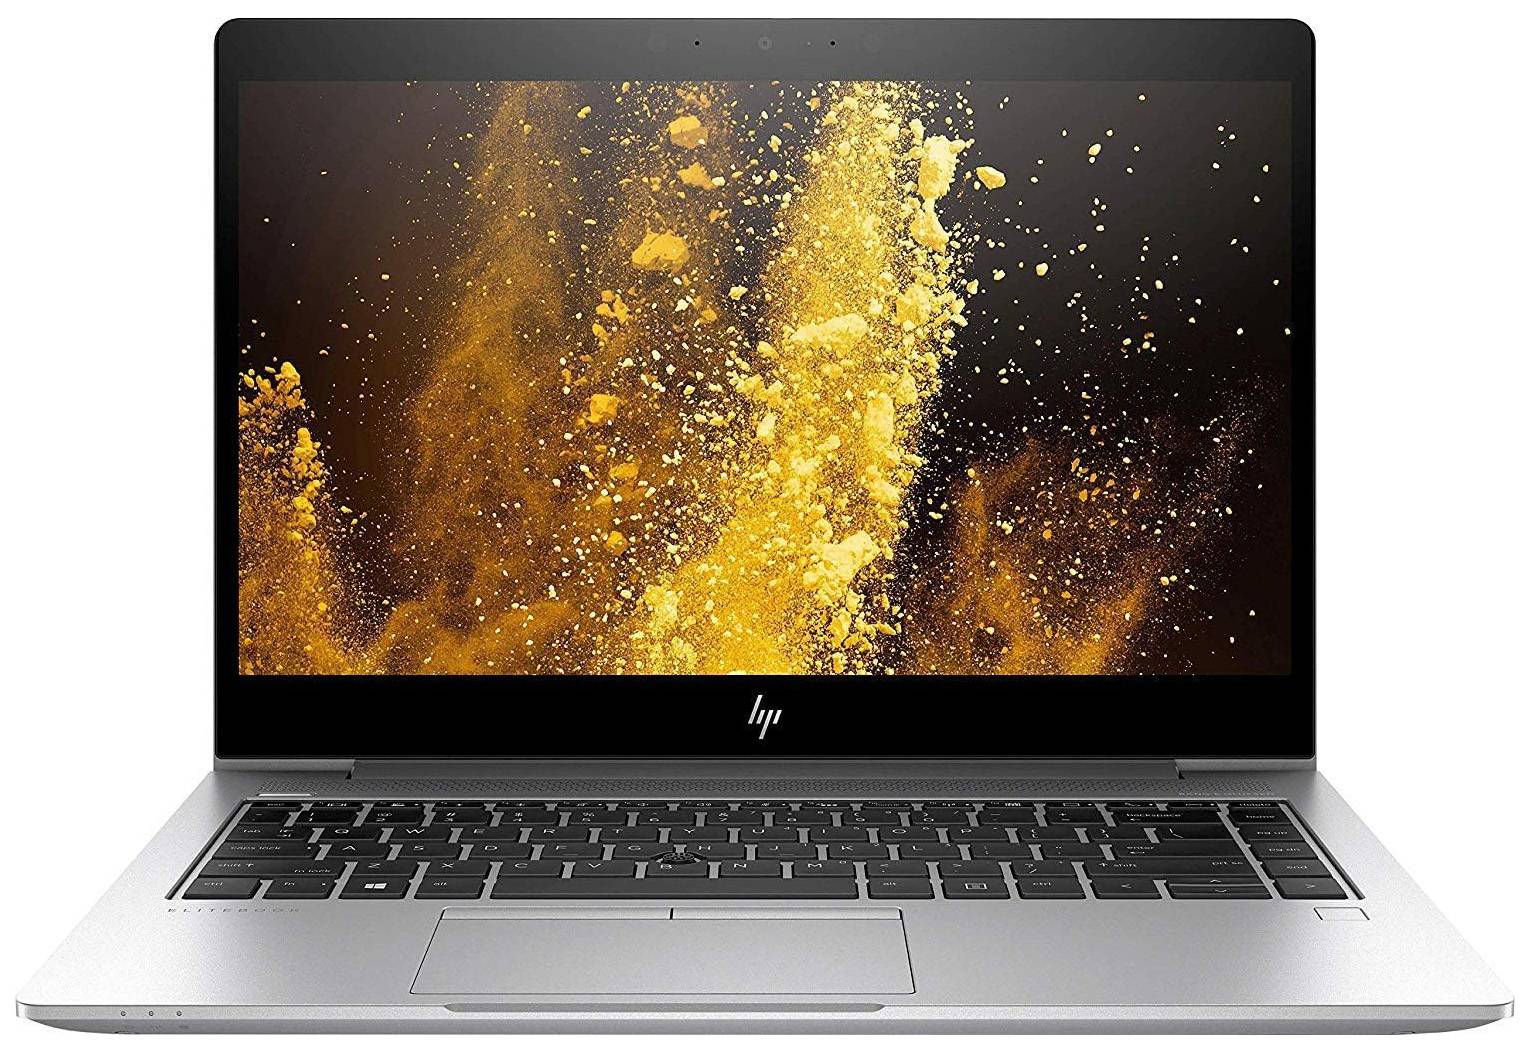 لپتاپ اچ پی استوک (HP) | EliteBook 840 G5 | avincomp.com